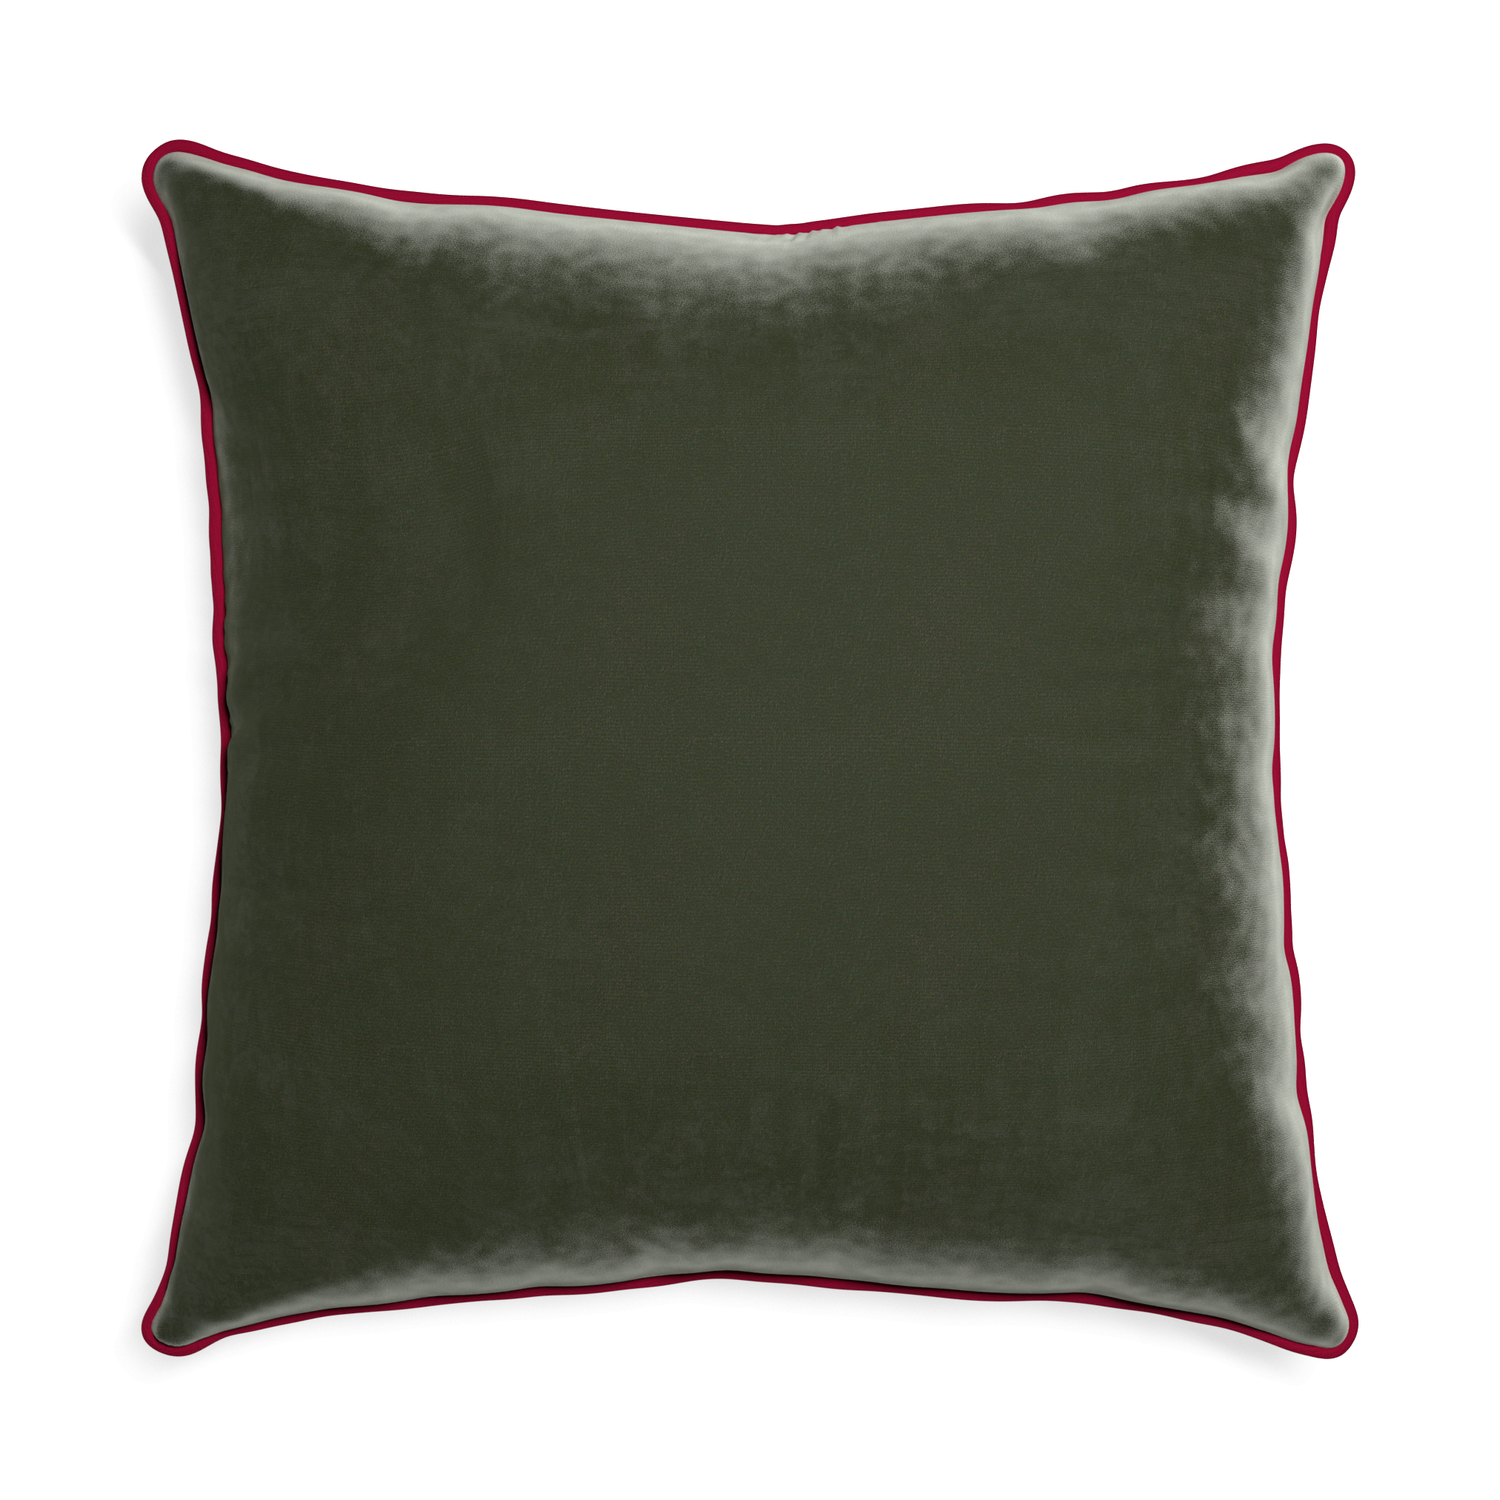 Euro-sham fern velvet custom pillow with raspberry piping on white background